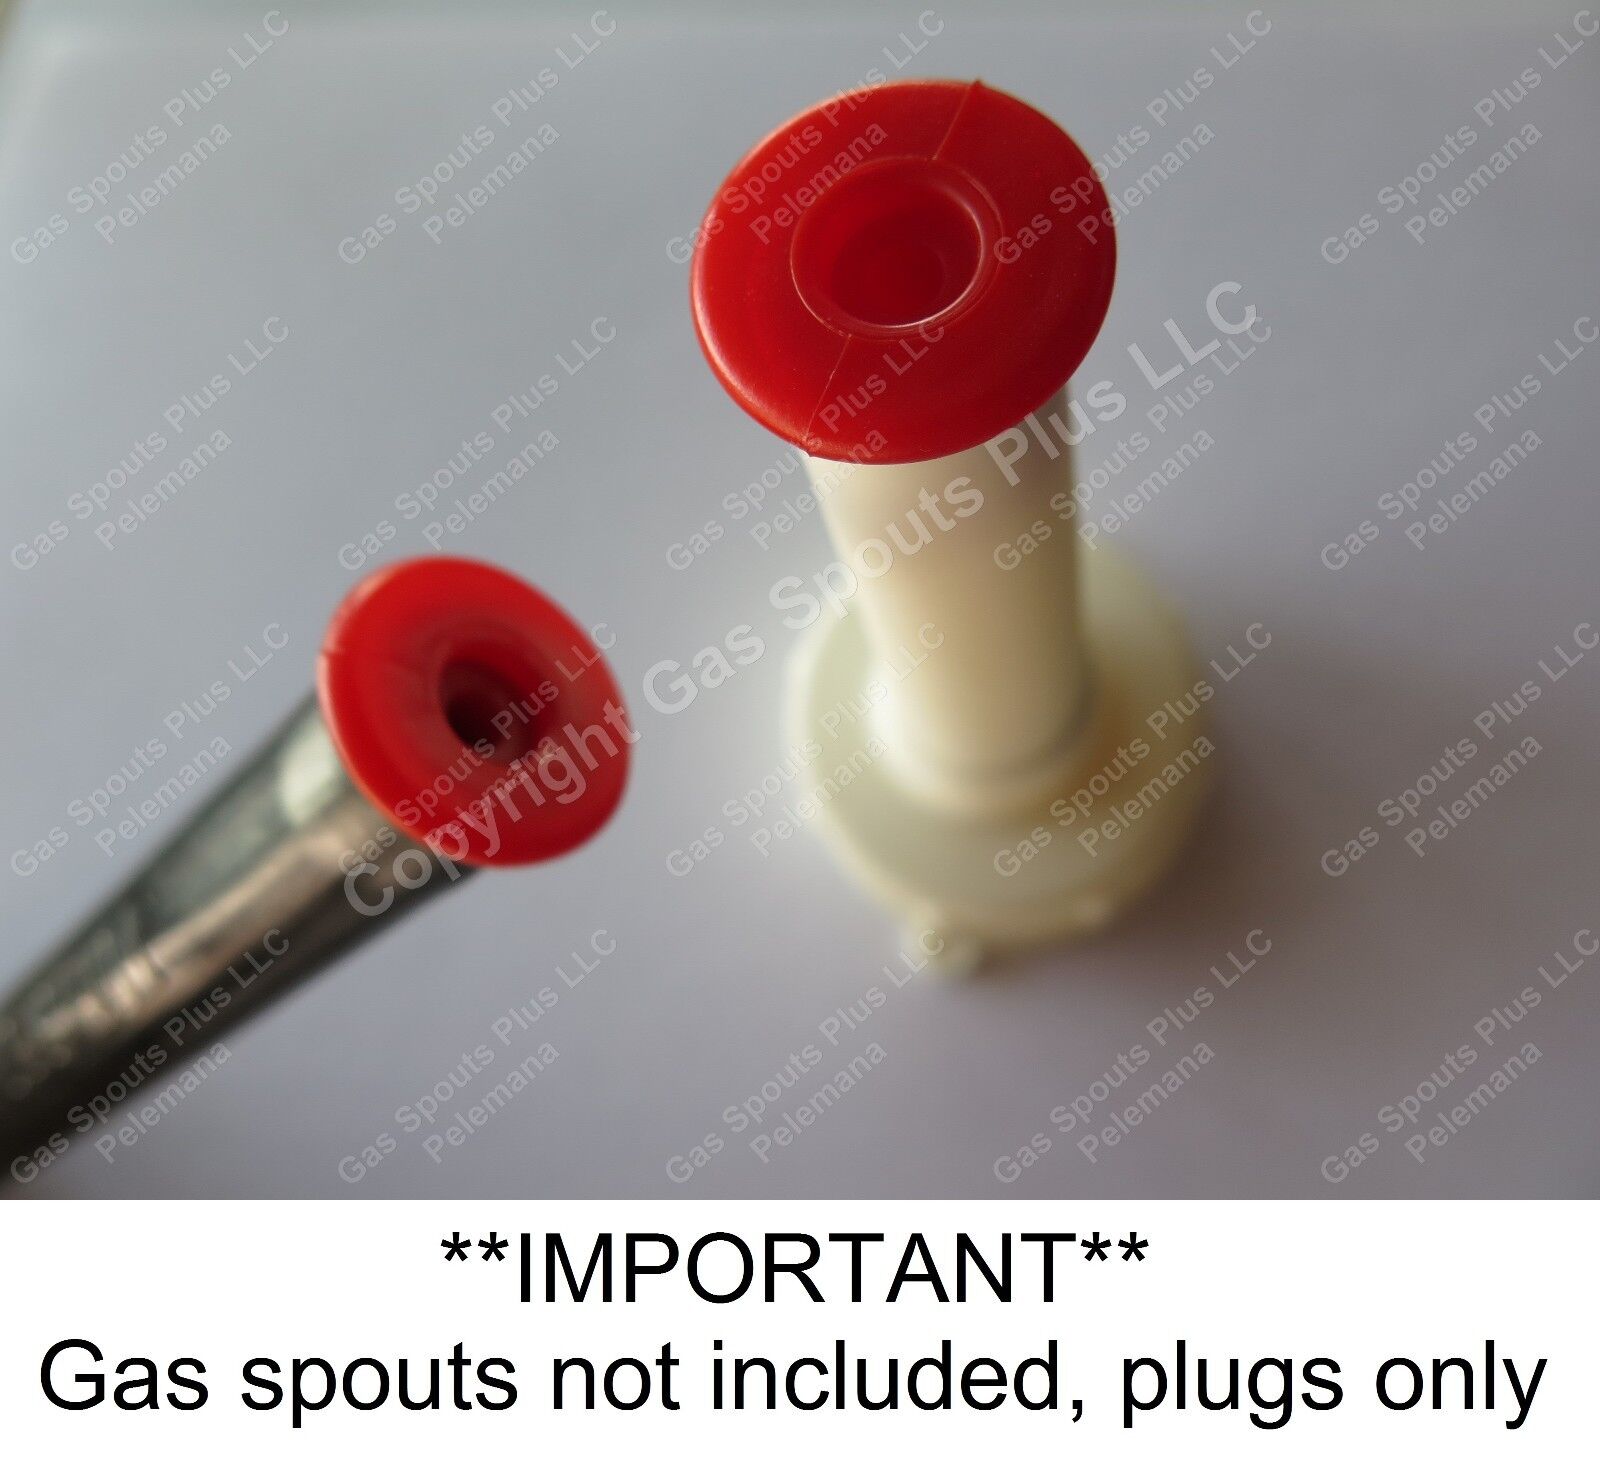 3-Pk RED AFTERMARKET EAGLE SPOUT PLUGS fits Rigid & Rubber Eagle Gas Spouts NEW 3 Red Aftermarket Eagle Spout Plugs GSP-89878 - фотография #7